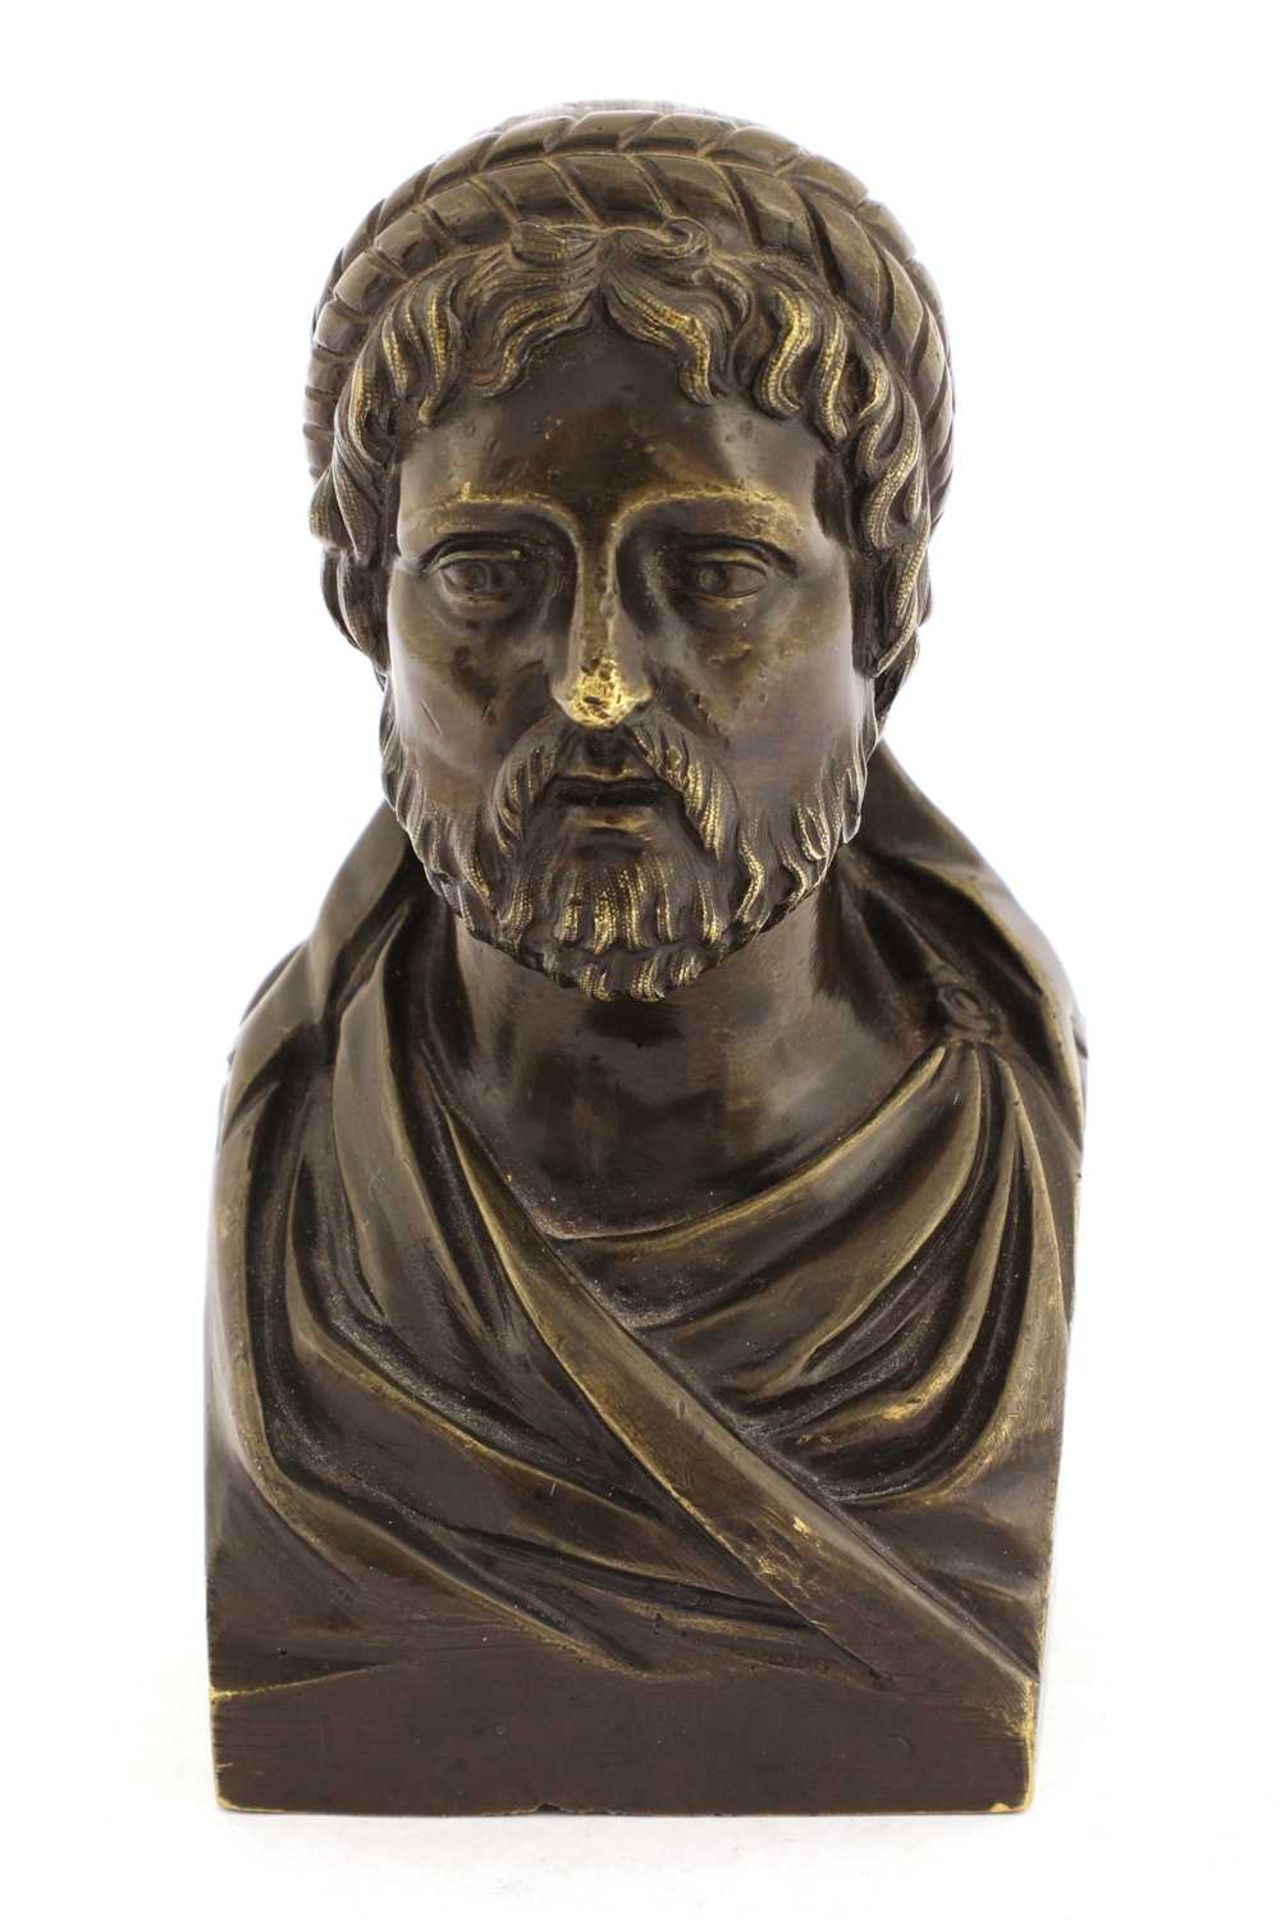 A Grand Tour bronze bust,